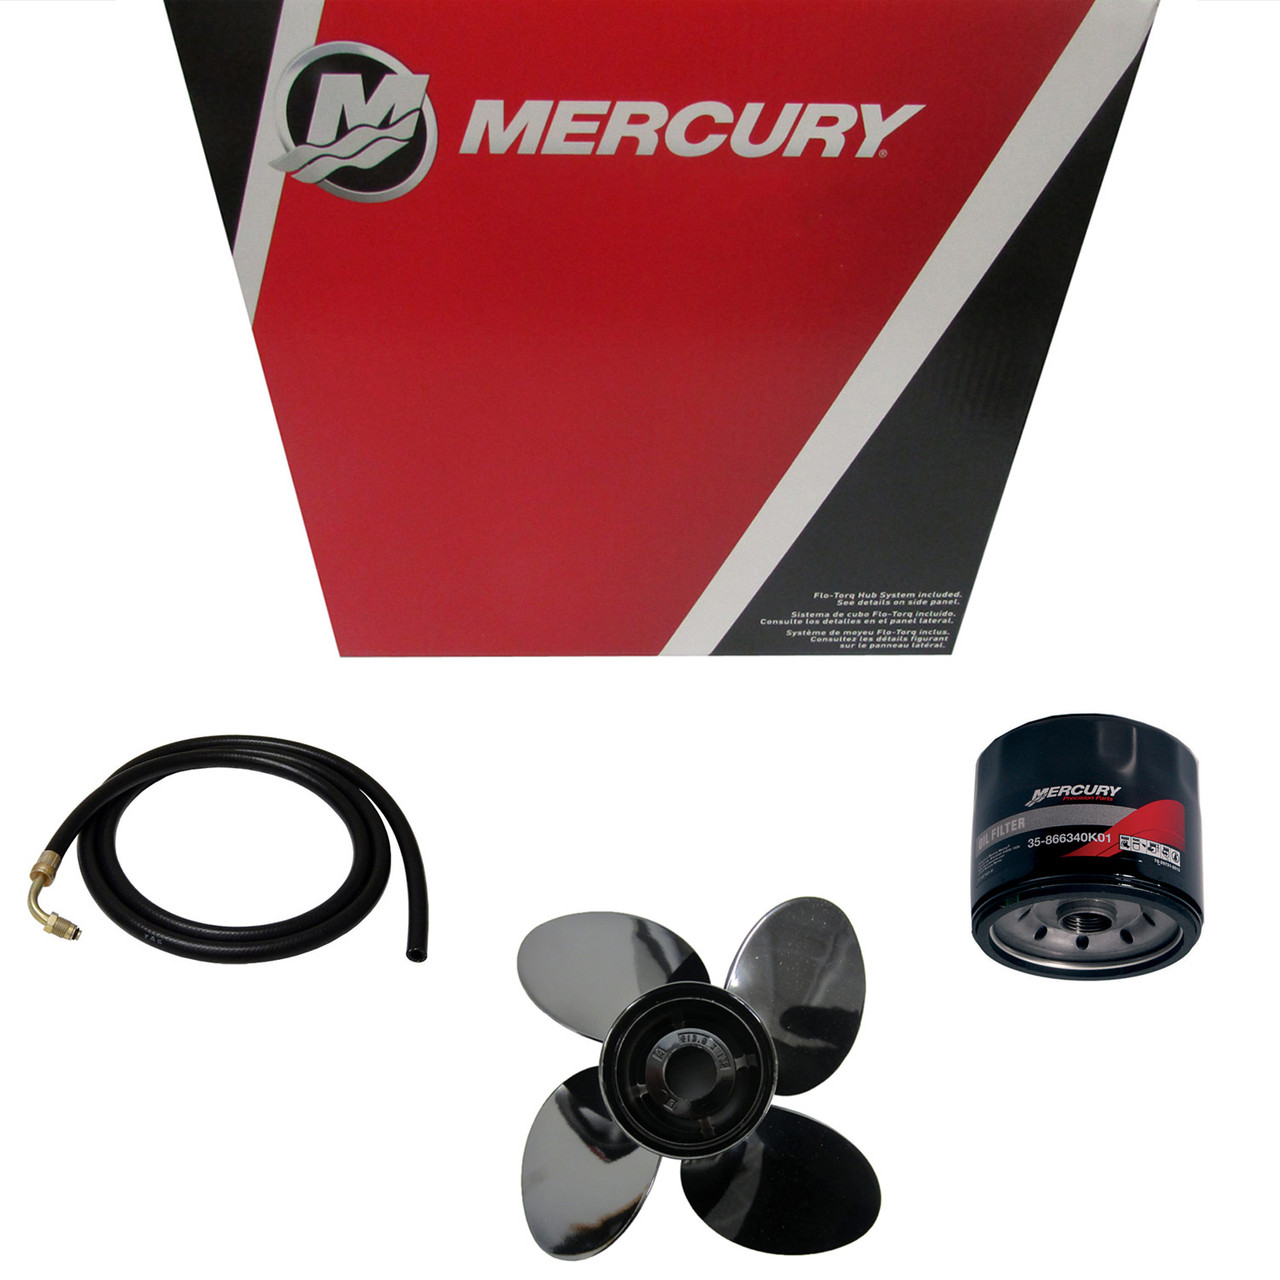 Mercury Marine / Mercruiser New OEM Nla, 32-8M0044840